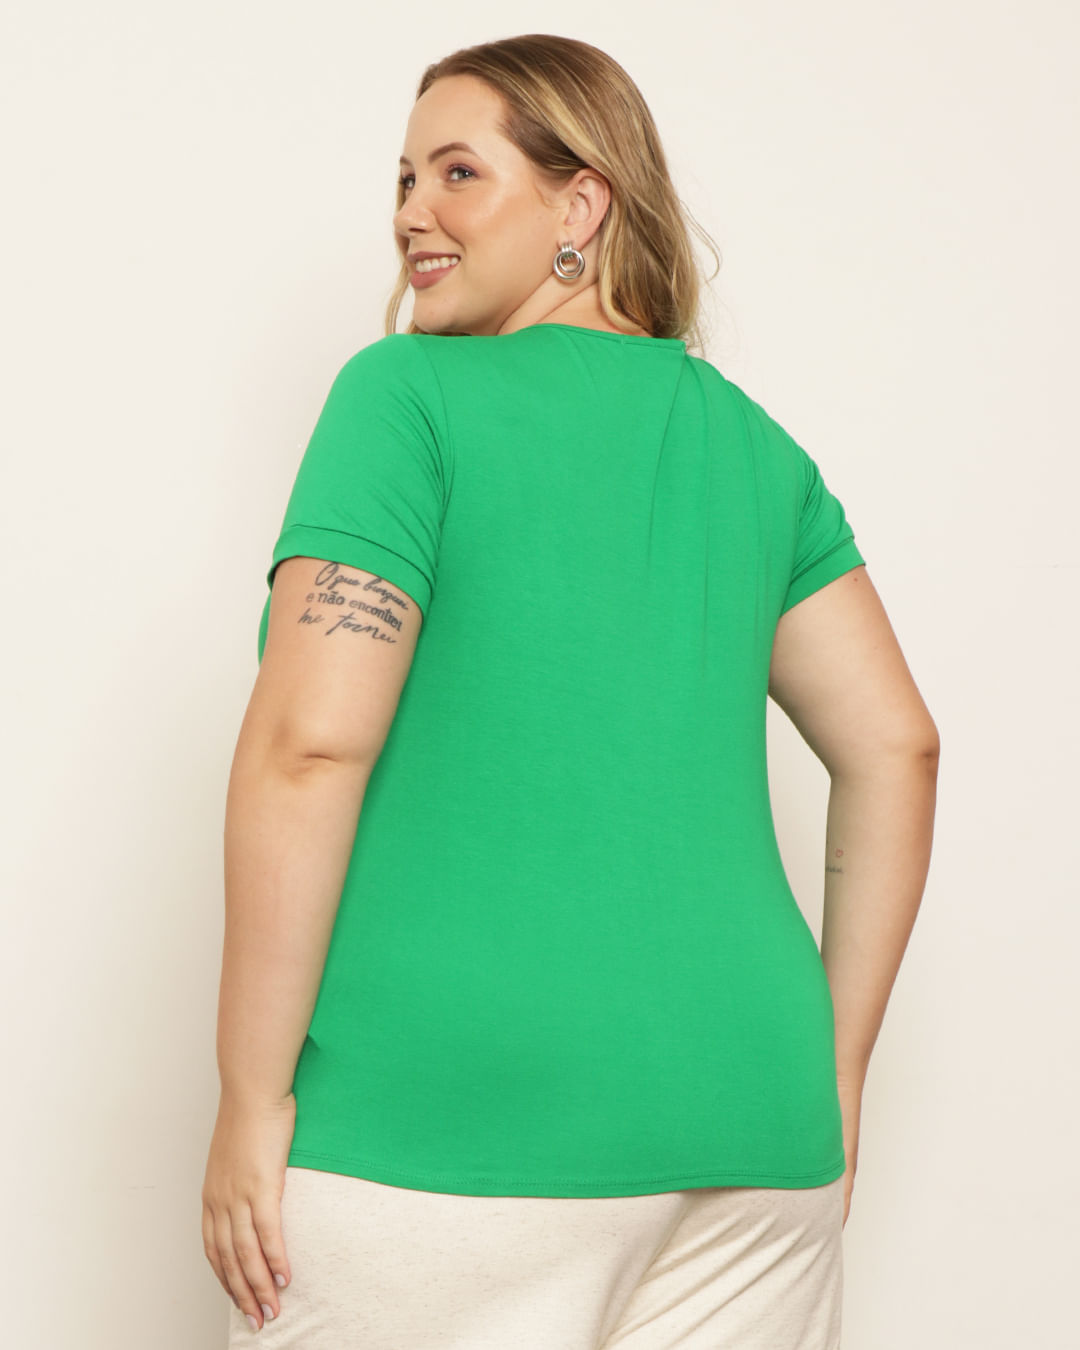 Blusa-Plus-Size-Feminina-Estampa-Coqueiros-Brilhos-Verde